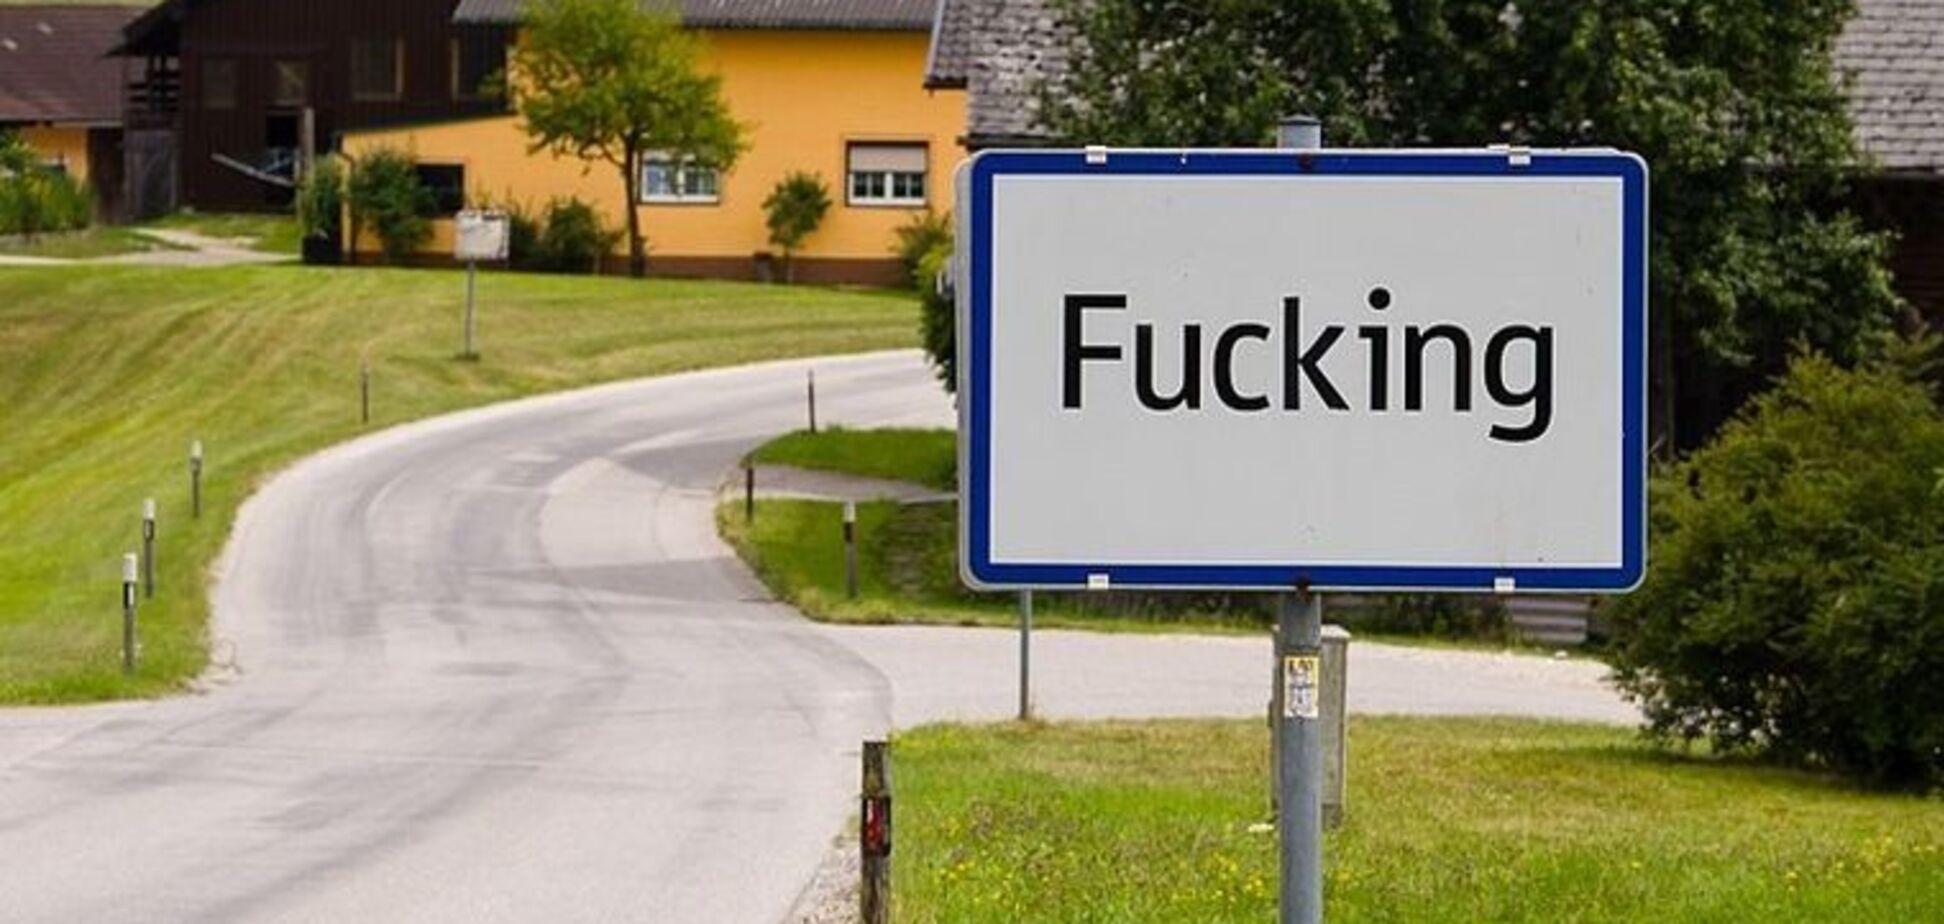 Село Fucking в Австрии сменит название из шуток и кражи вывесок